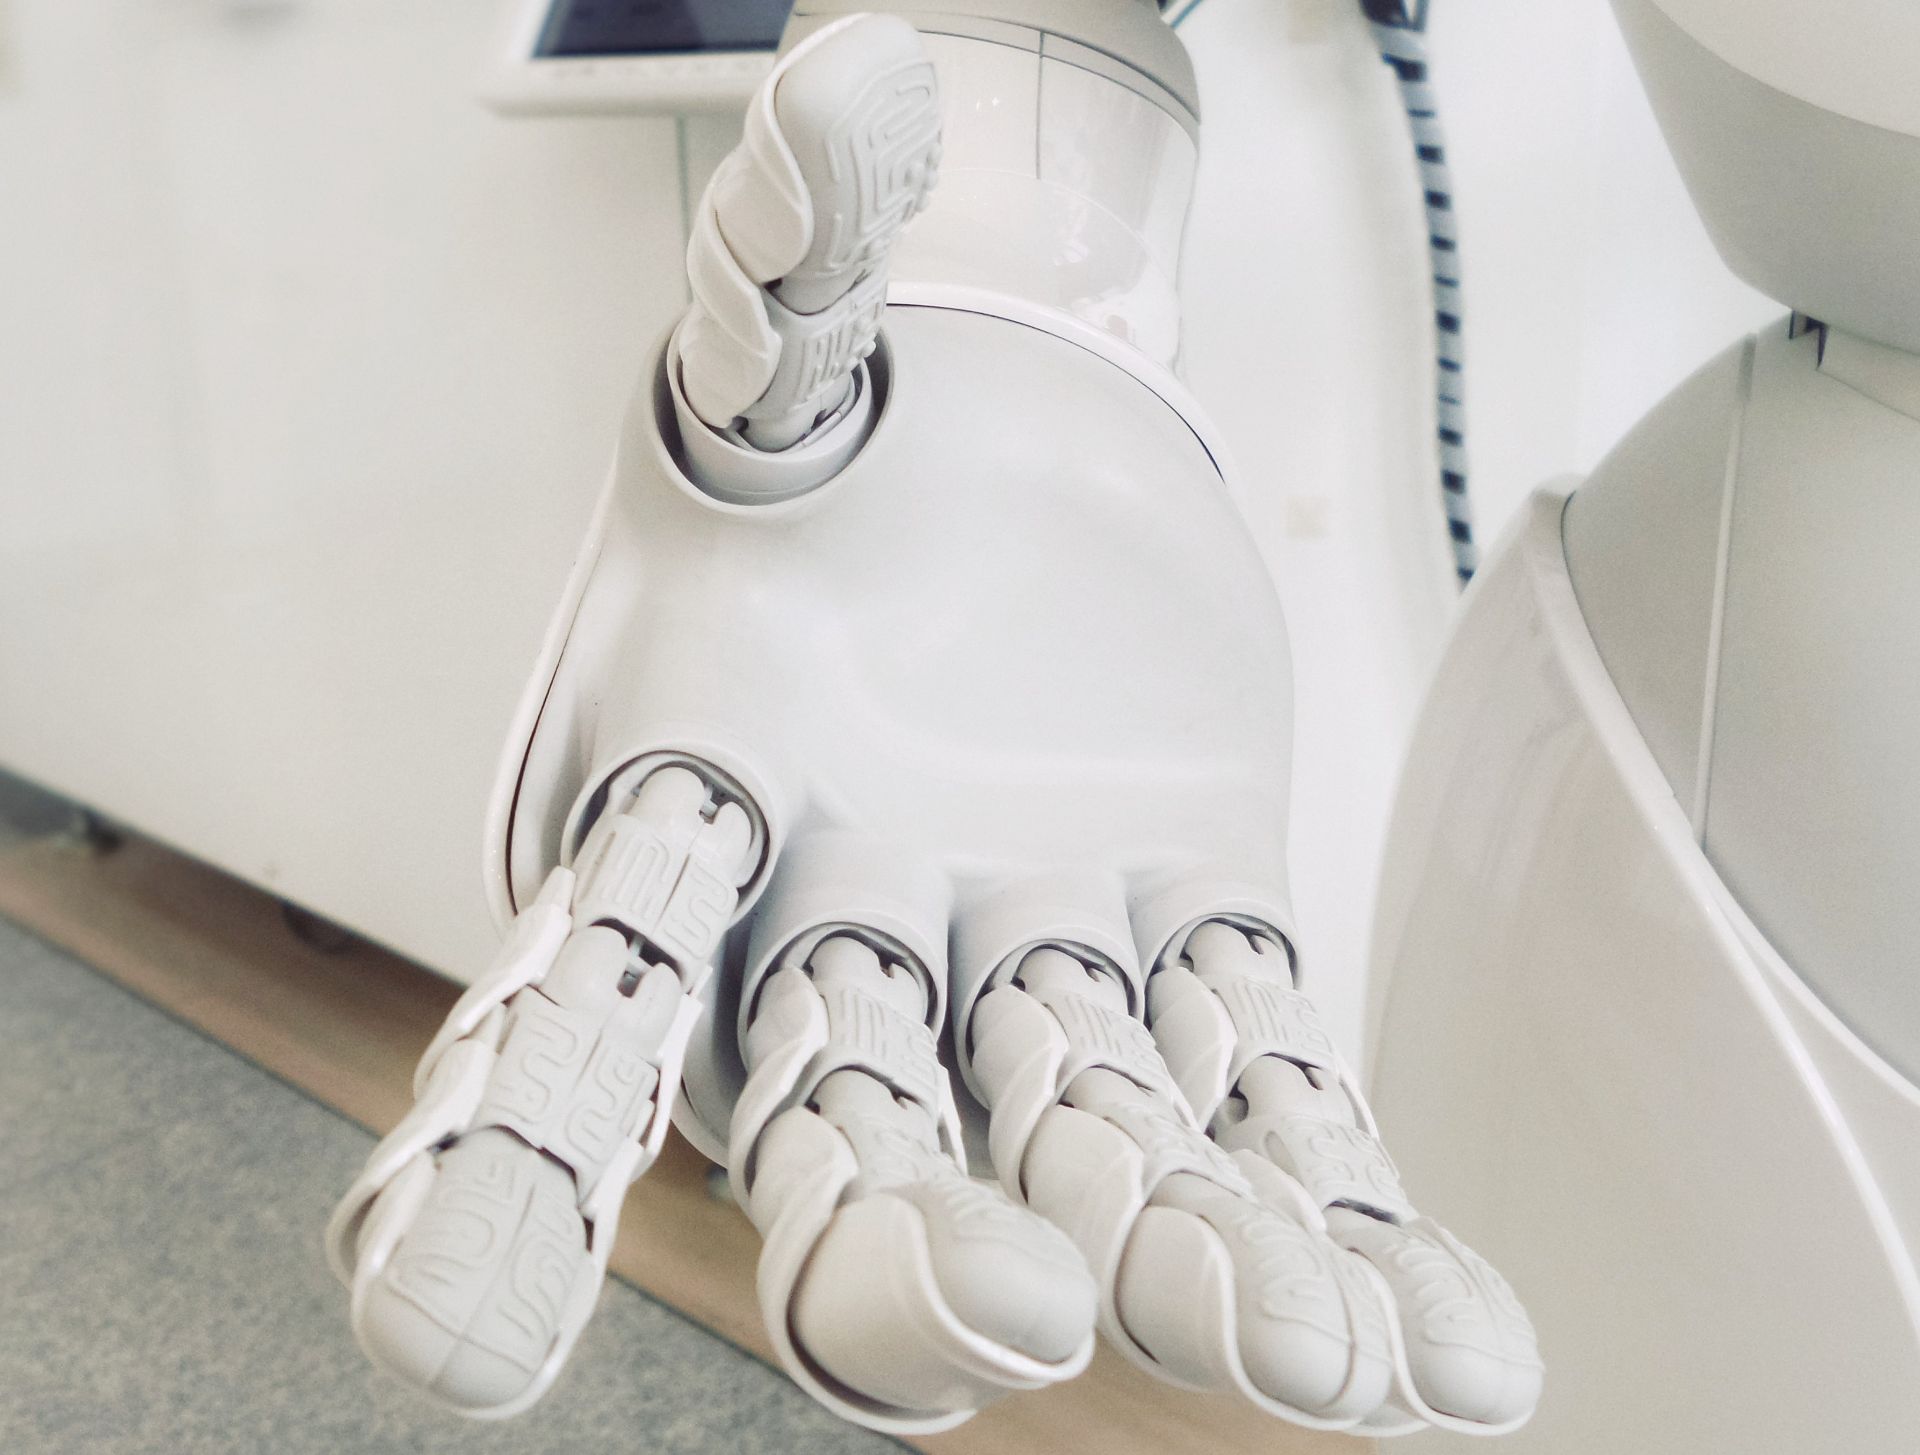 Un nou tip de piele electronică conferă roboților simțul tactil